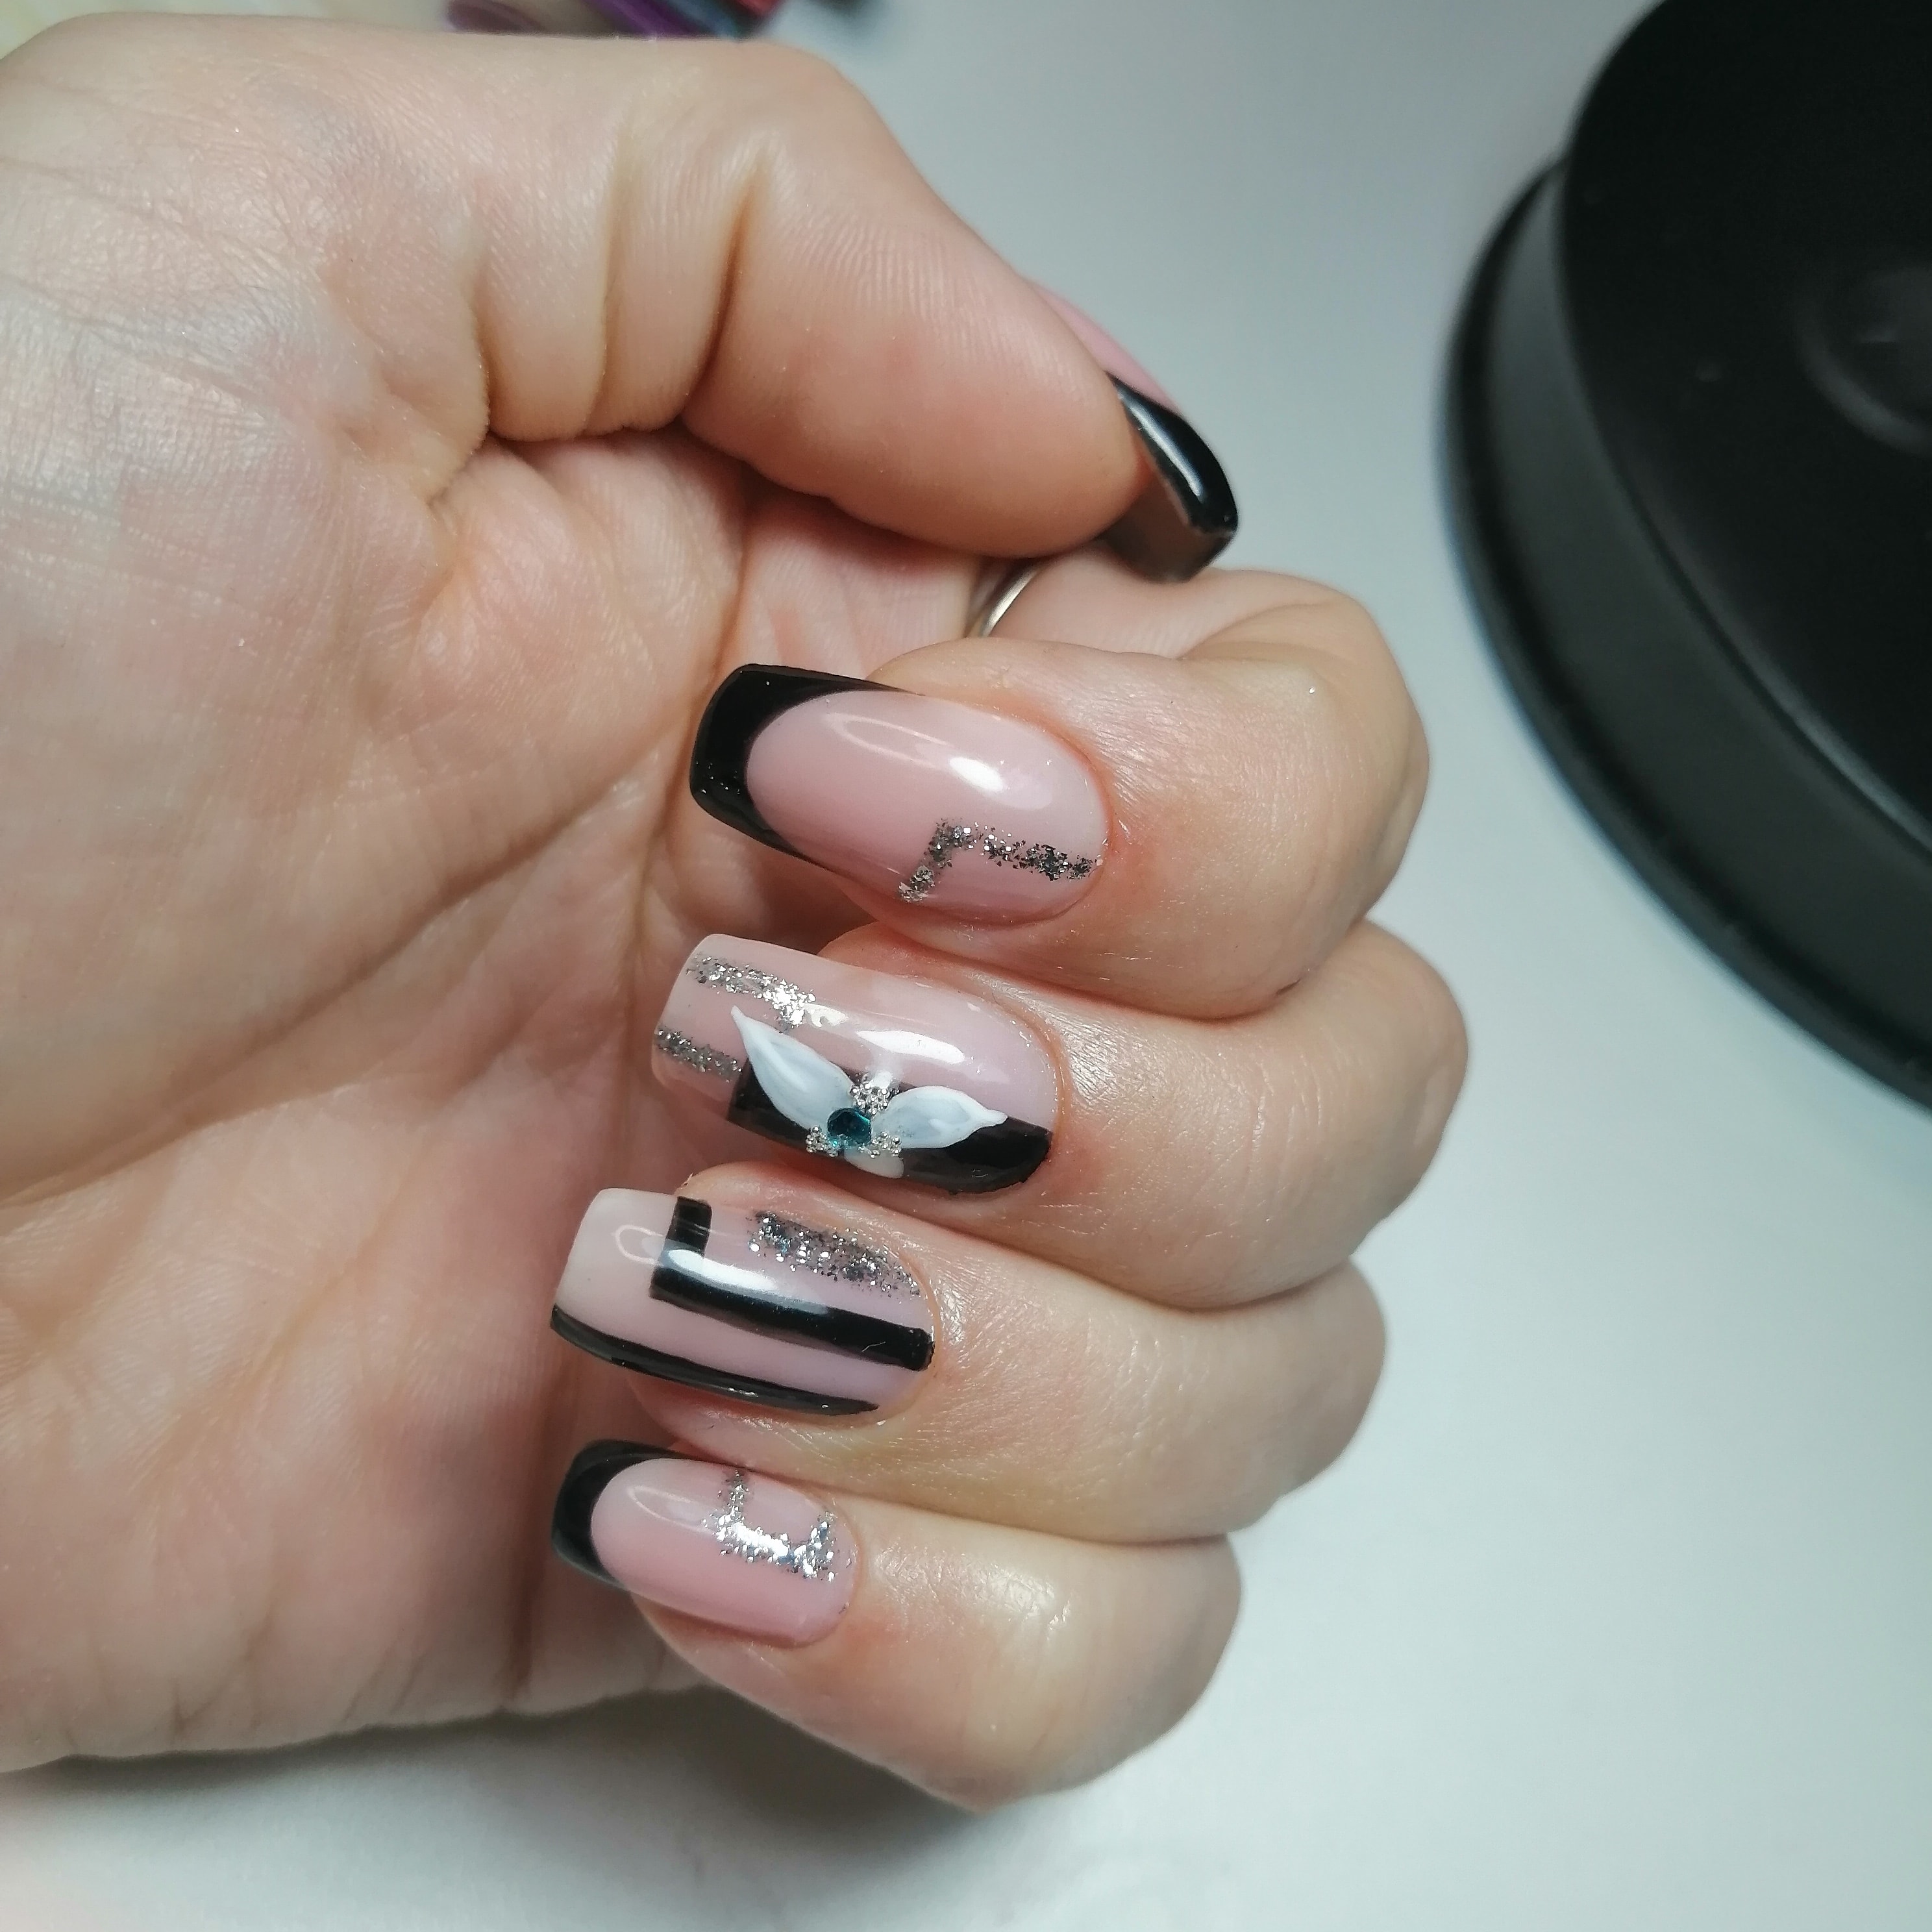 Геометрический френч с цветочным рисунком и блестками в черном цвете на длинные ногти.